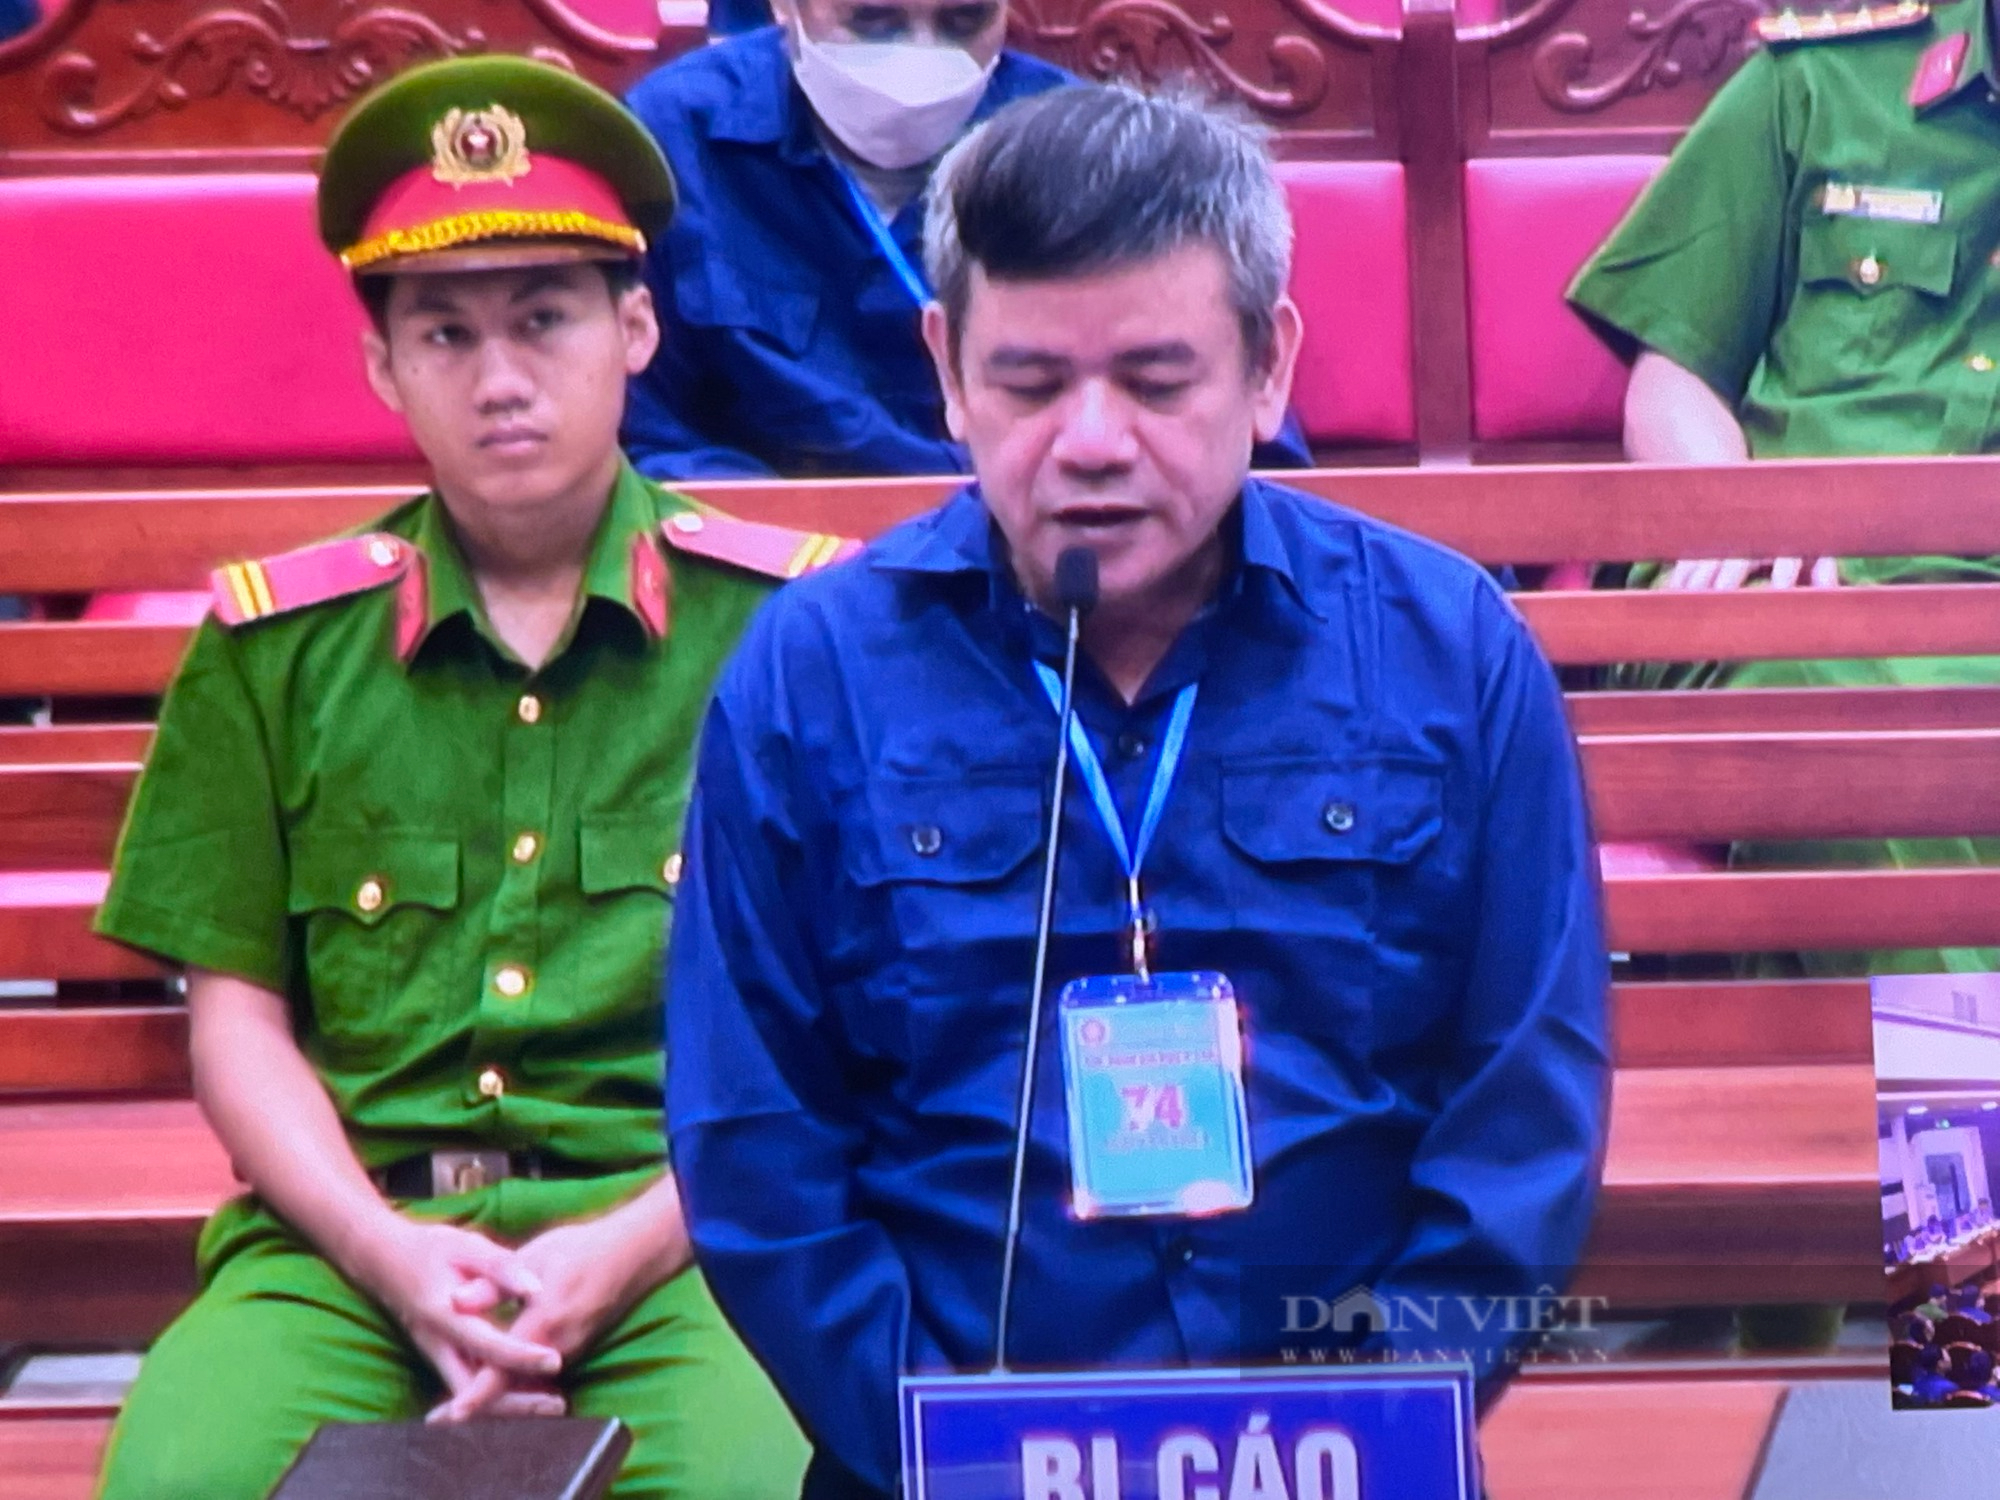 Đại án xăng lậu: VKSND Đồng Nai “khẳng định” đủ căn cứ xác định “cựu sếp đội 3” nhận hối lộ - Ảnh 4.